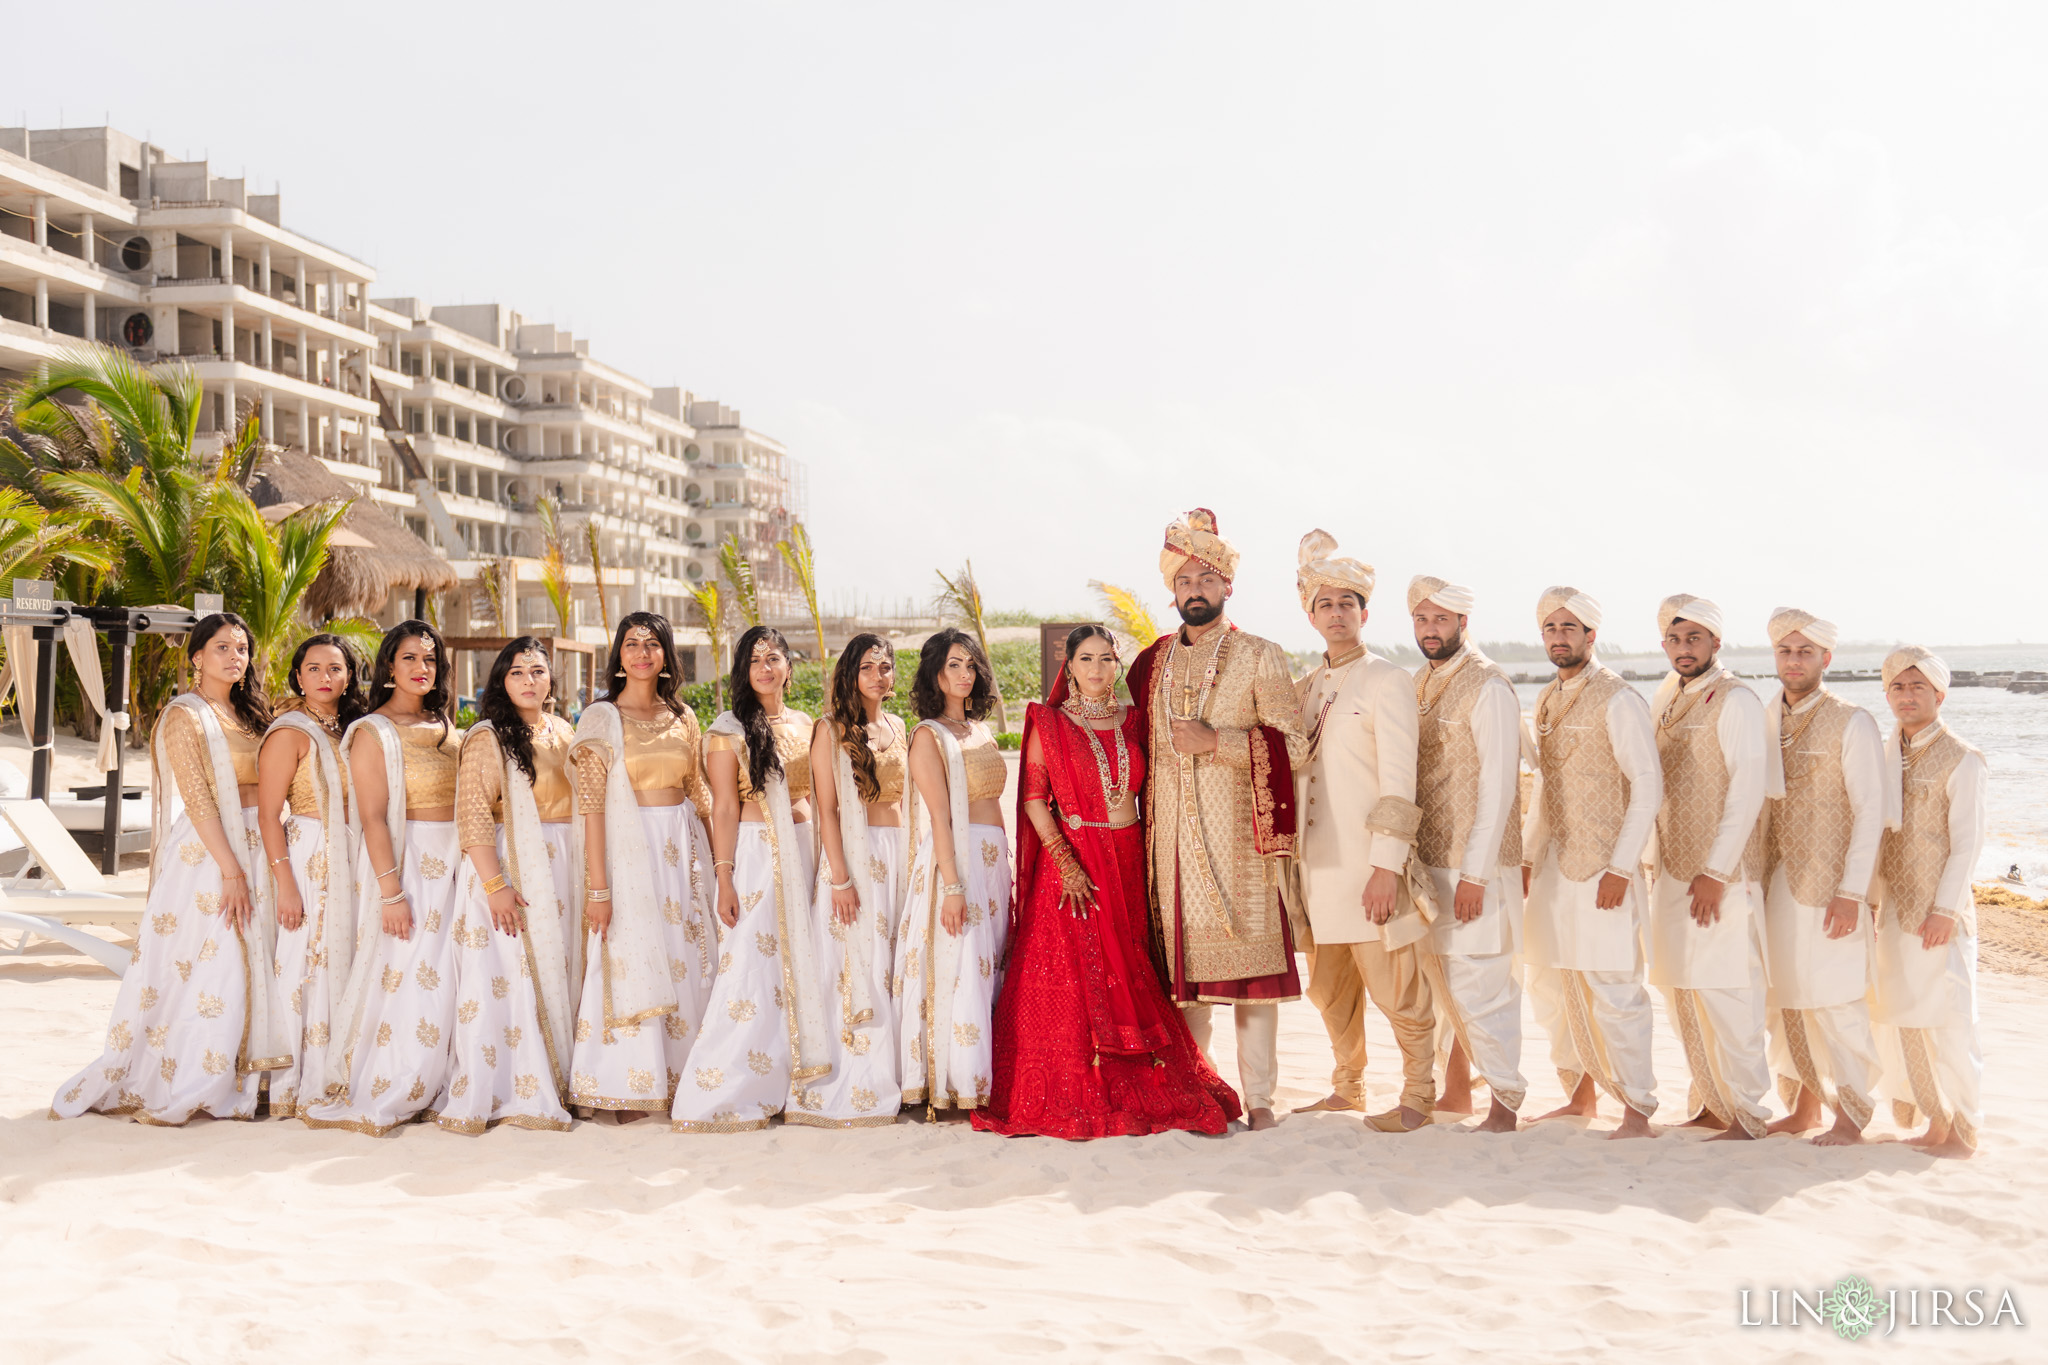 19 Generations El Dorado Royale Cancun Mexico Indian Wedding Party Photography